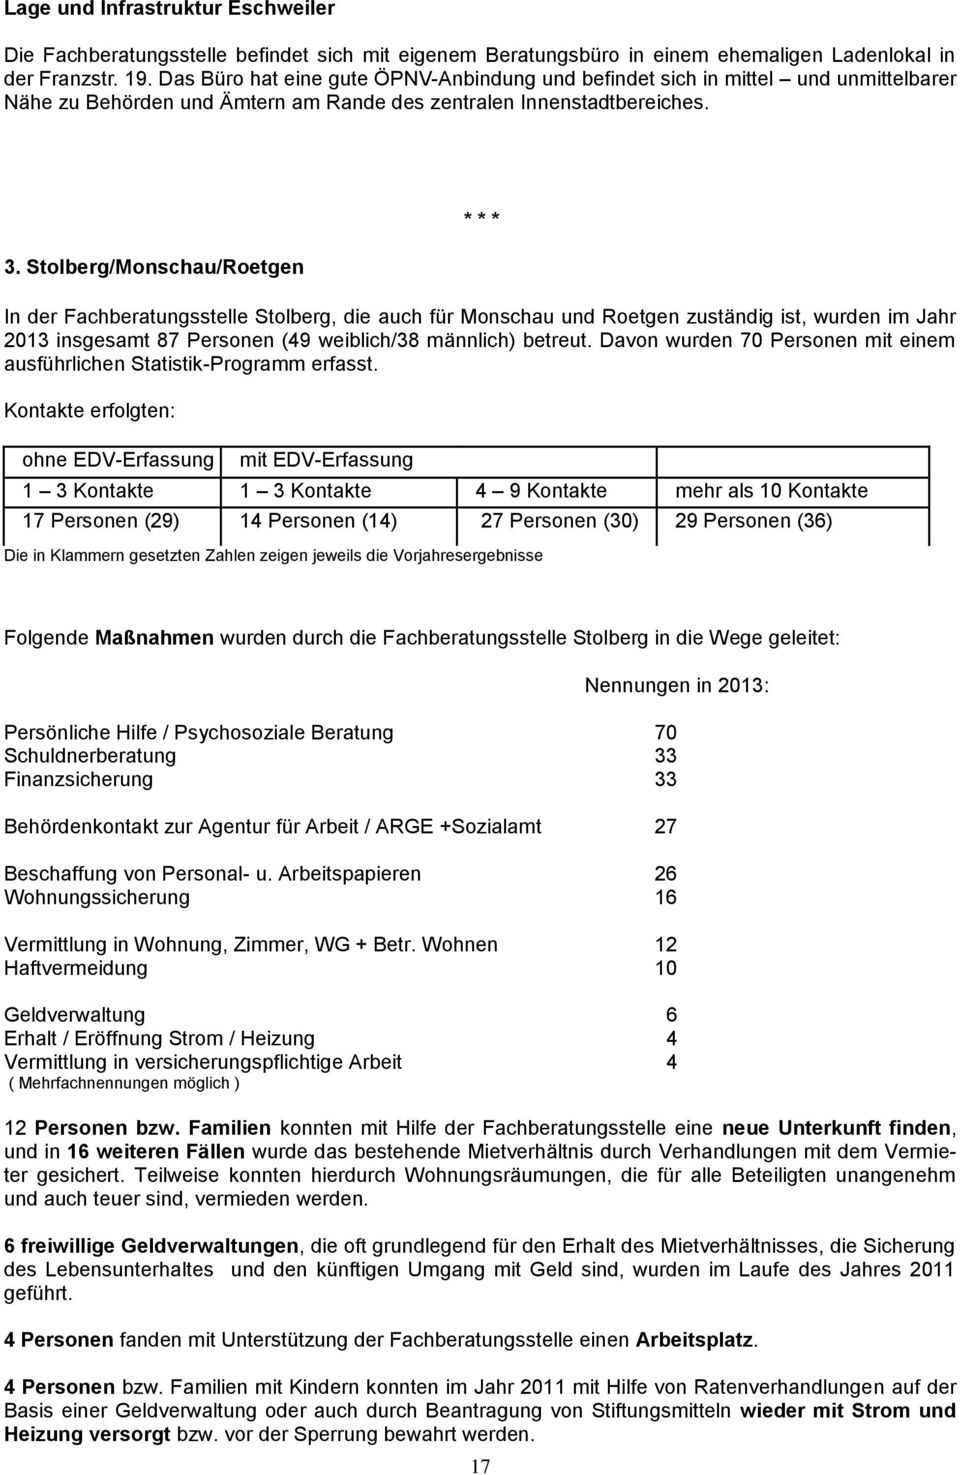 Stolberg/Monschau/Roetgen In der Fachberatungsstelle Stolberg, die auch für Monschau und Roetgen zuständig ist, wurden im Jahr 2013 insgesamt 87 Personen (49 weiblich/38 männlich) betreut.